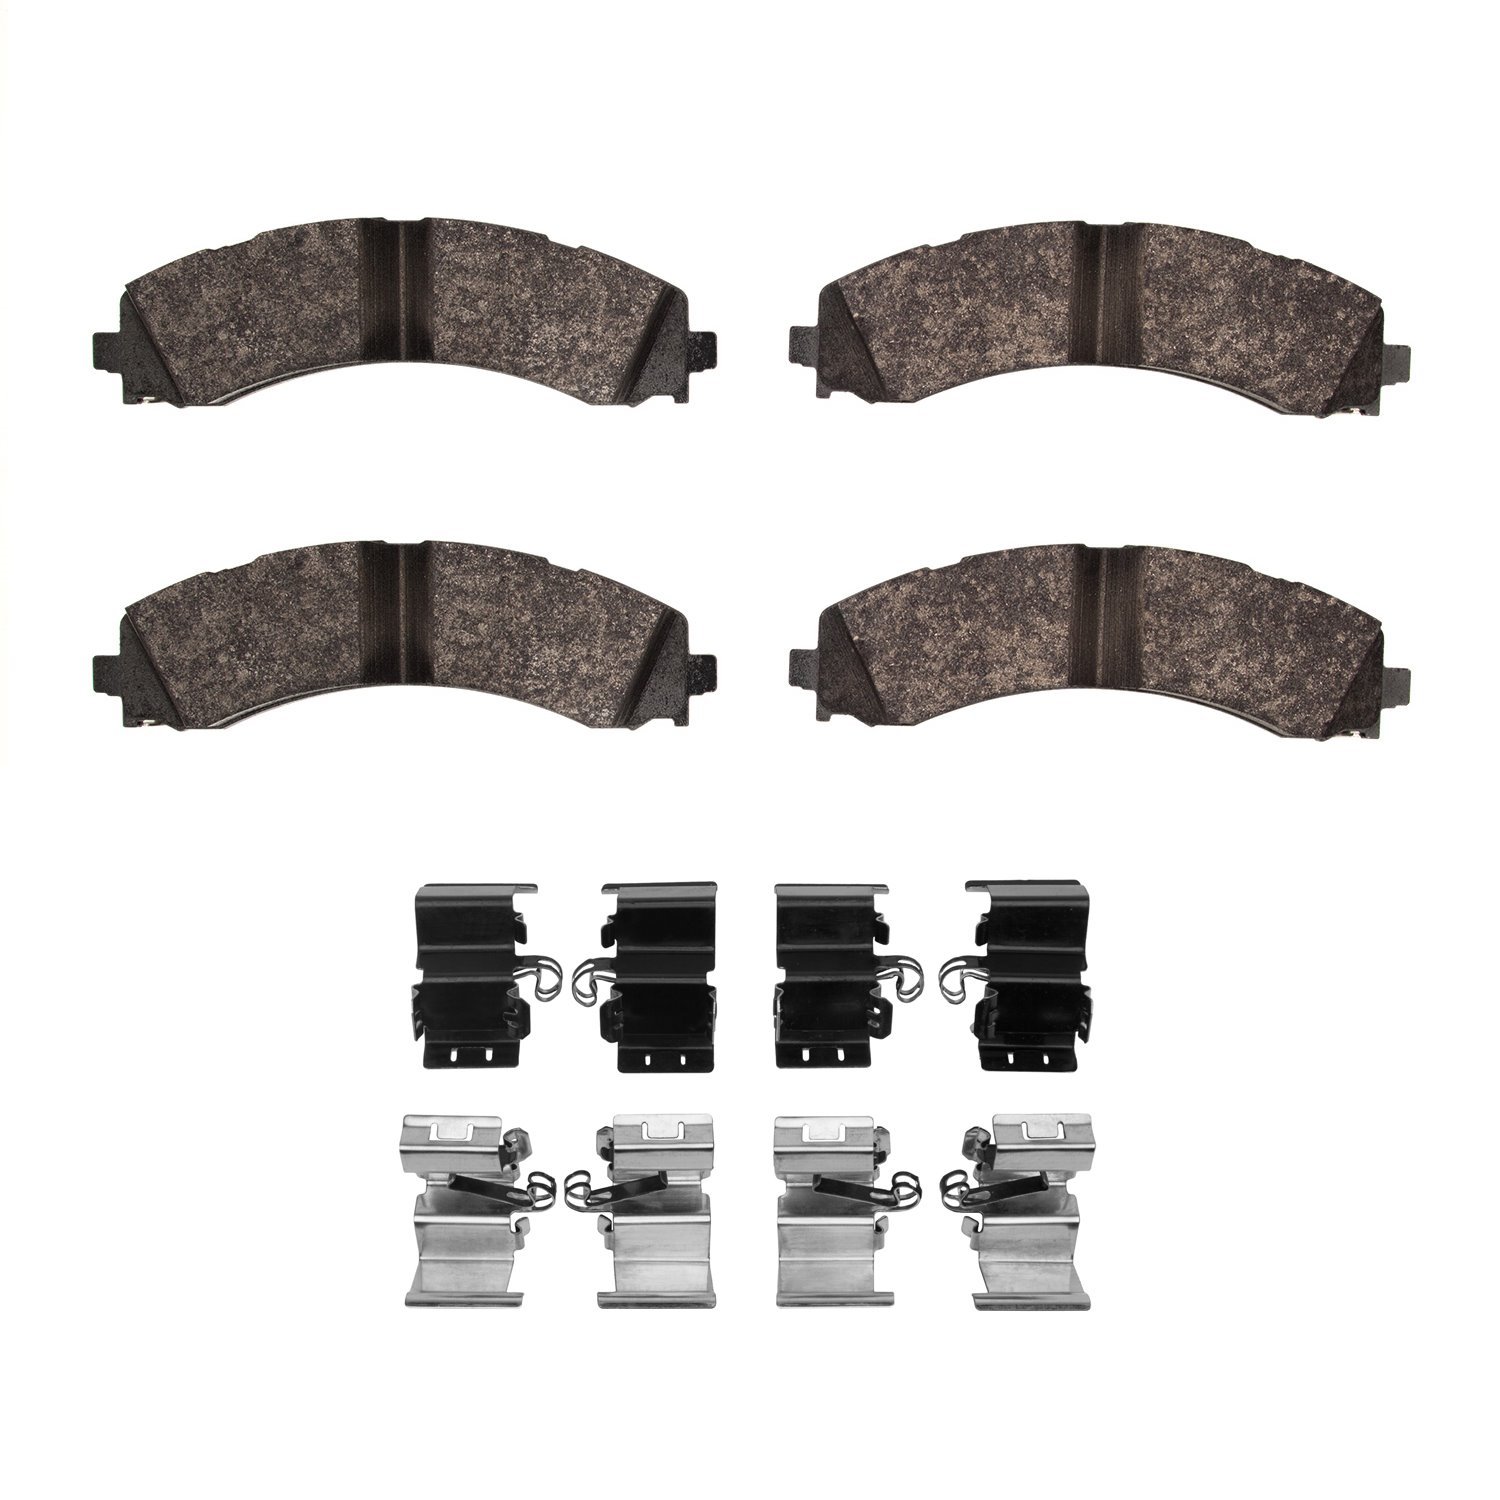 1214-2224-01 Heavy-Duty Brake Pads & Hardware Kit, Fits Select Mopar, Position: Rear